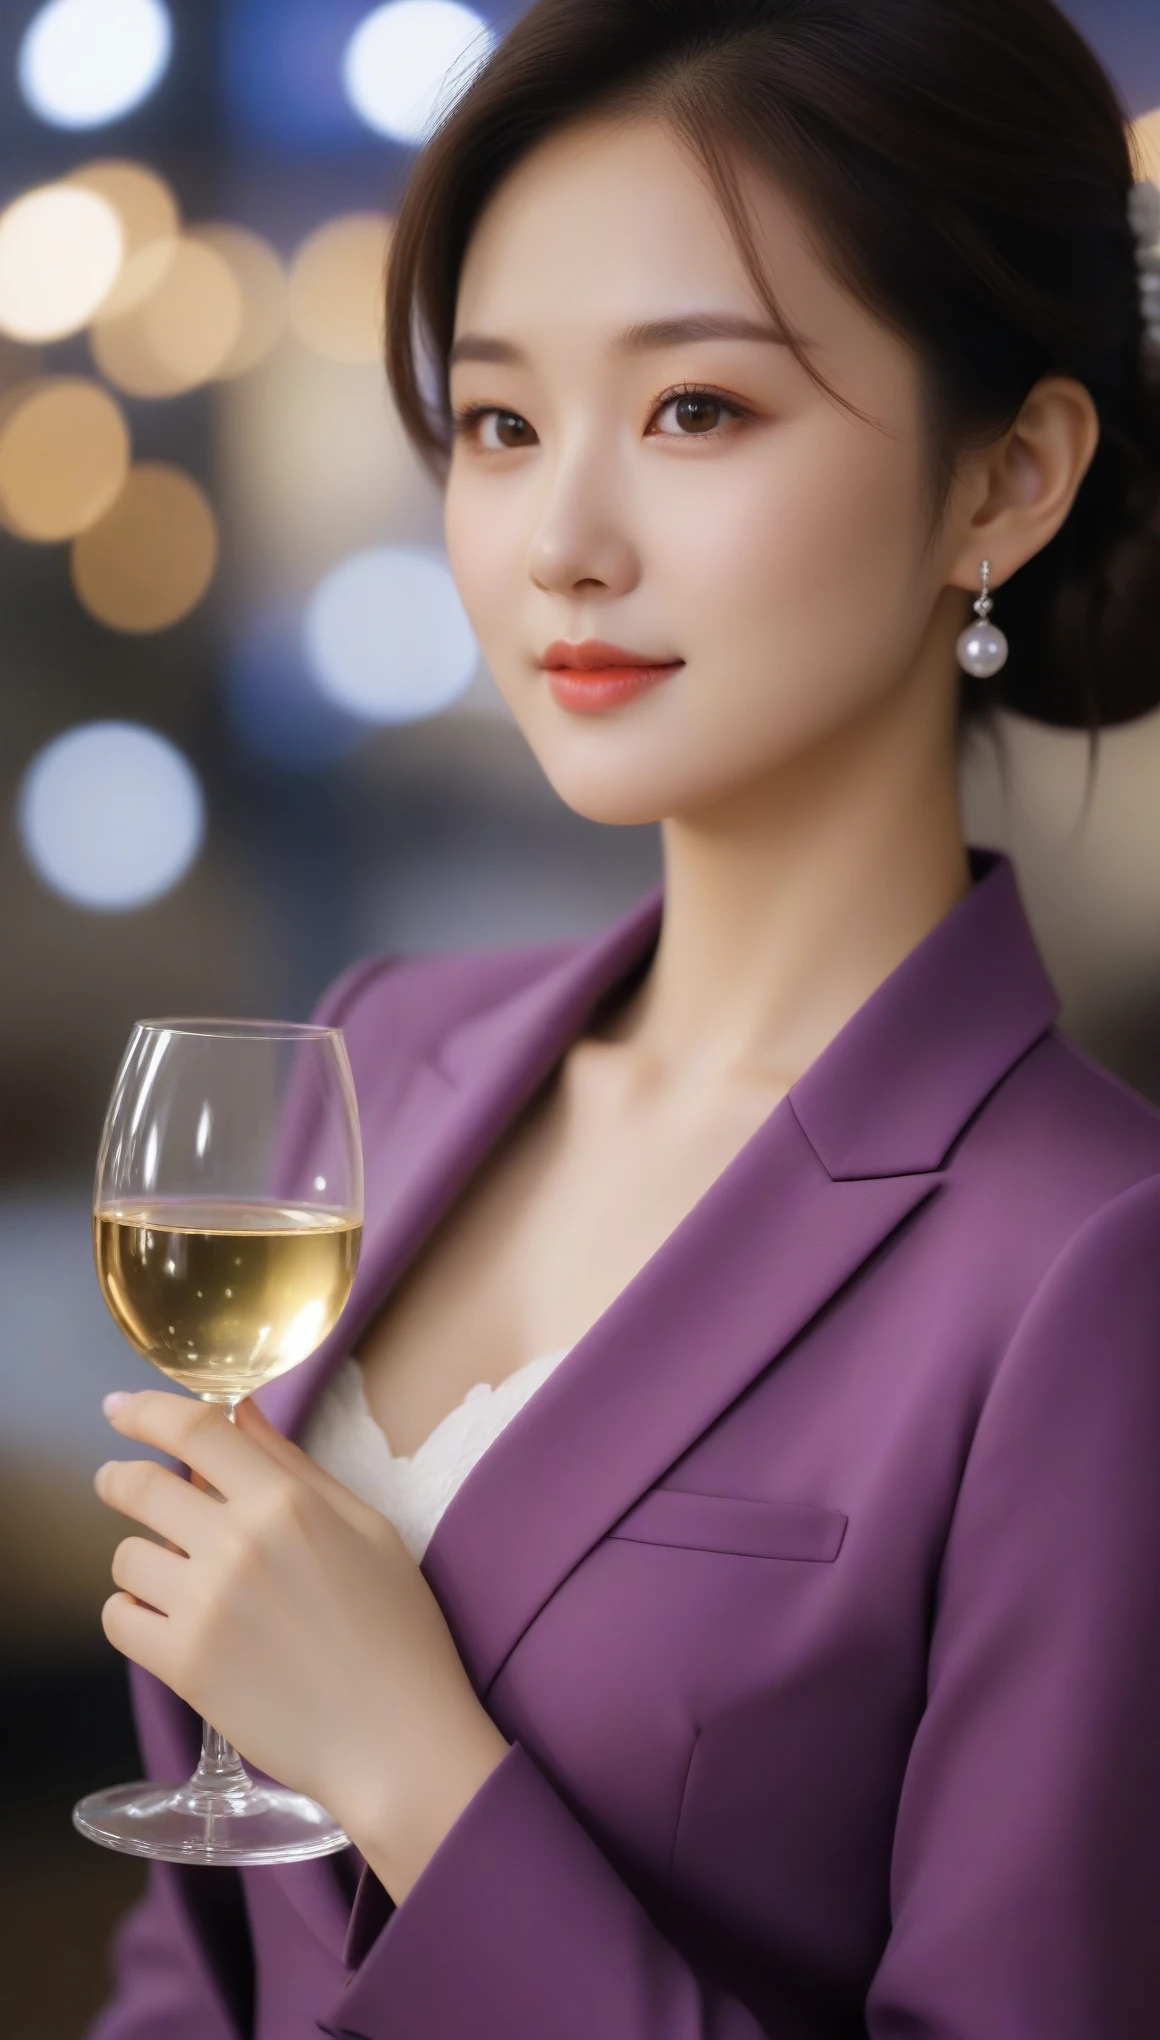 特写, 美丽的韩国女性的侧面照, 34 英寸胸部尺寸, 微微一笑, 穿着紫色西装, 白手套, 拿着酒杯, 散景背景, 超高清